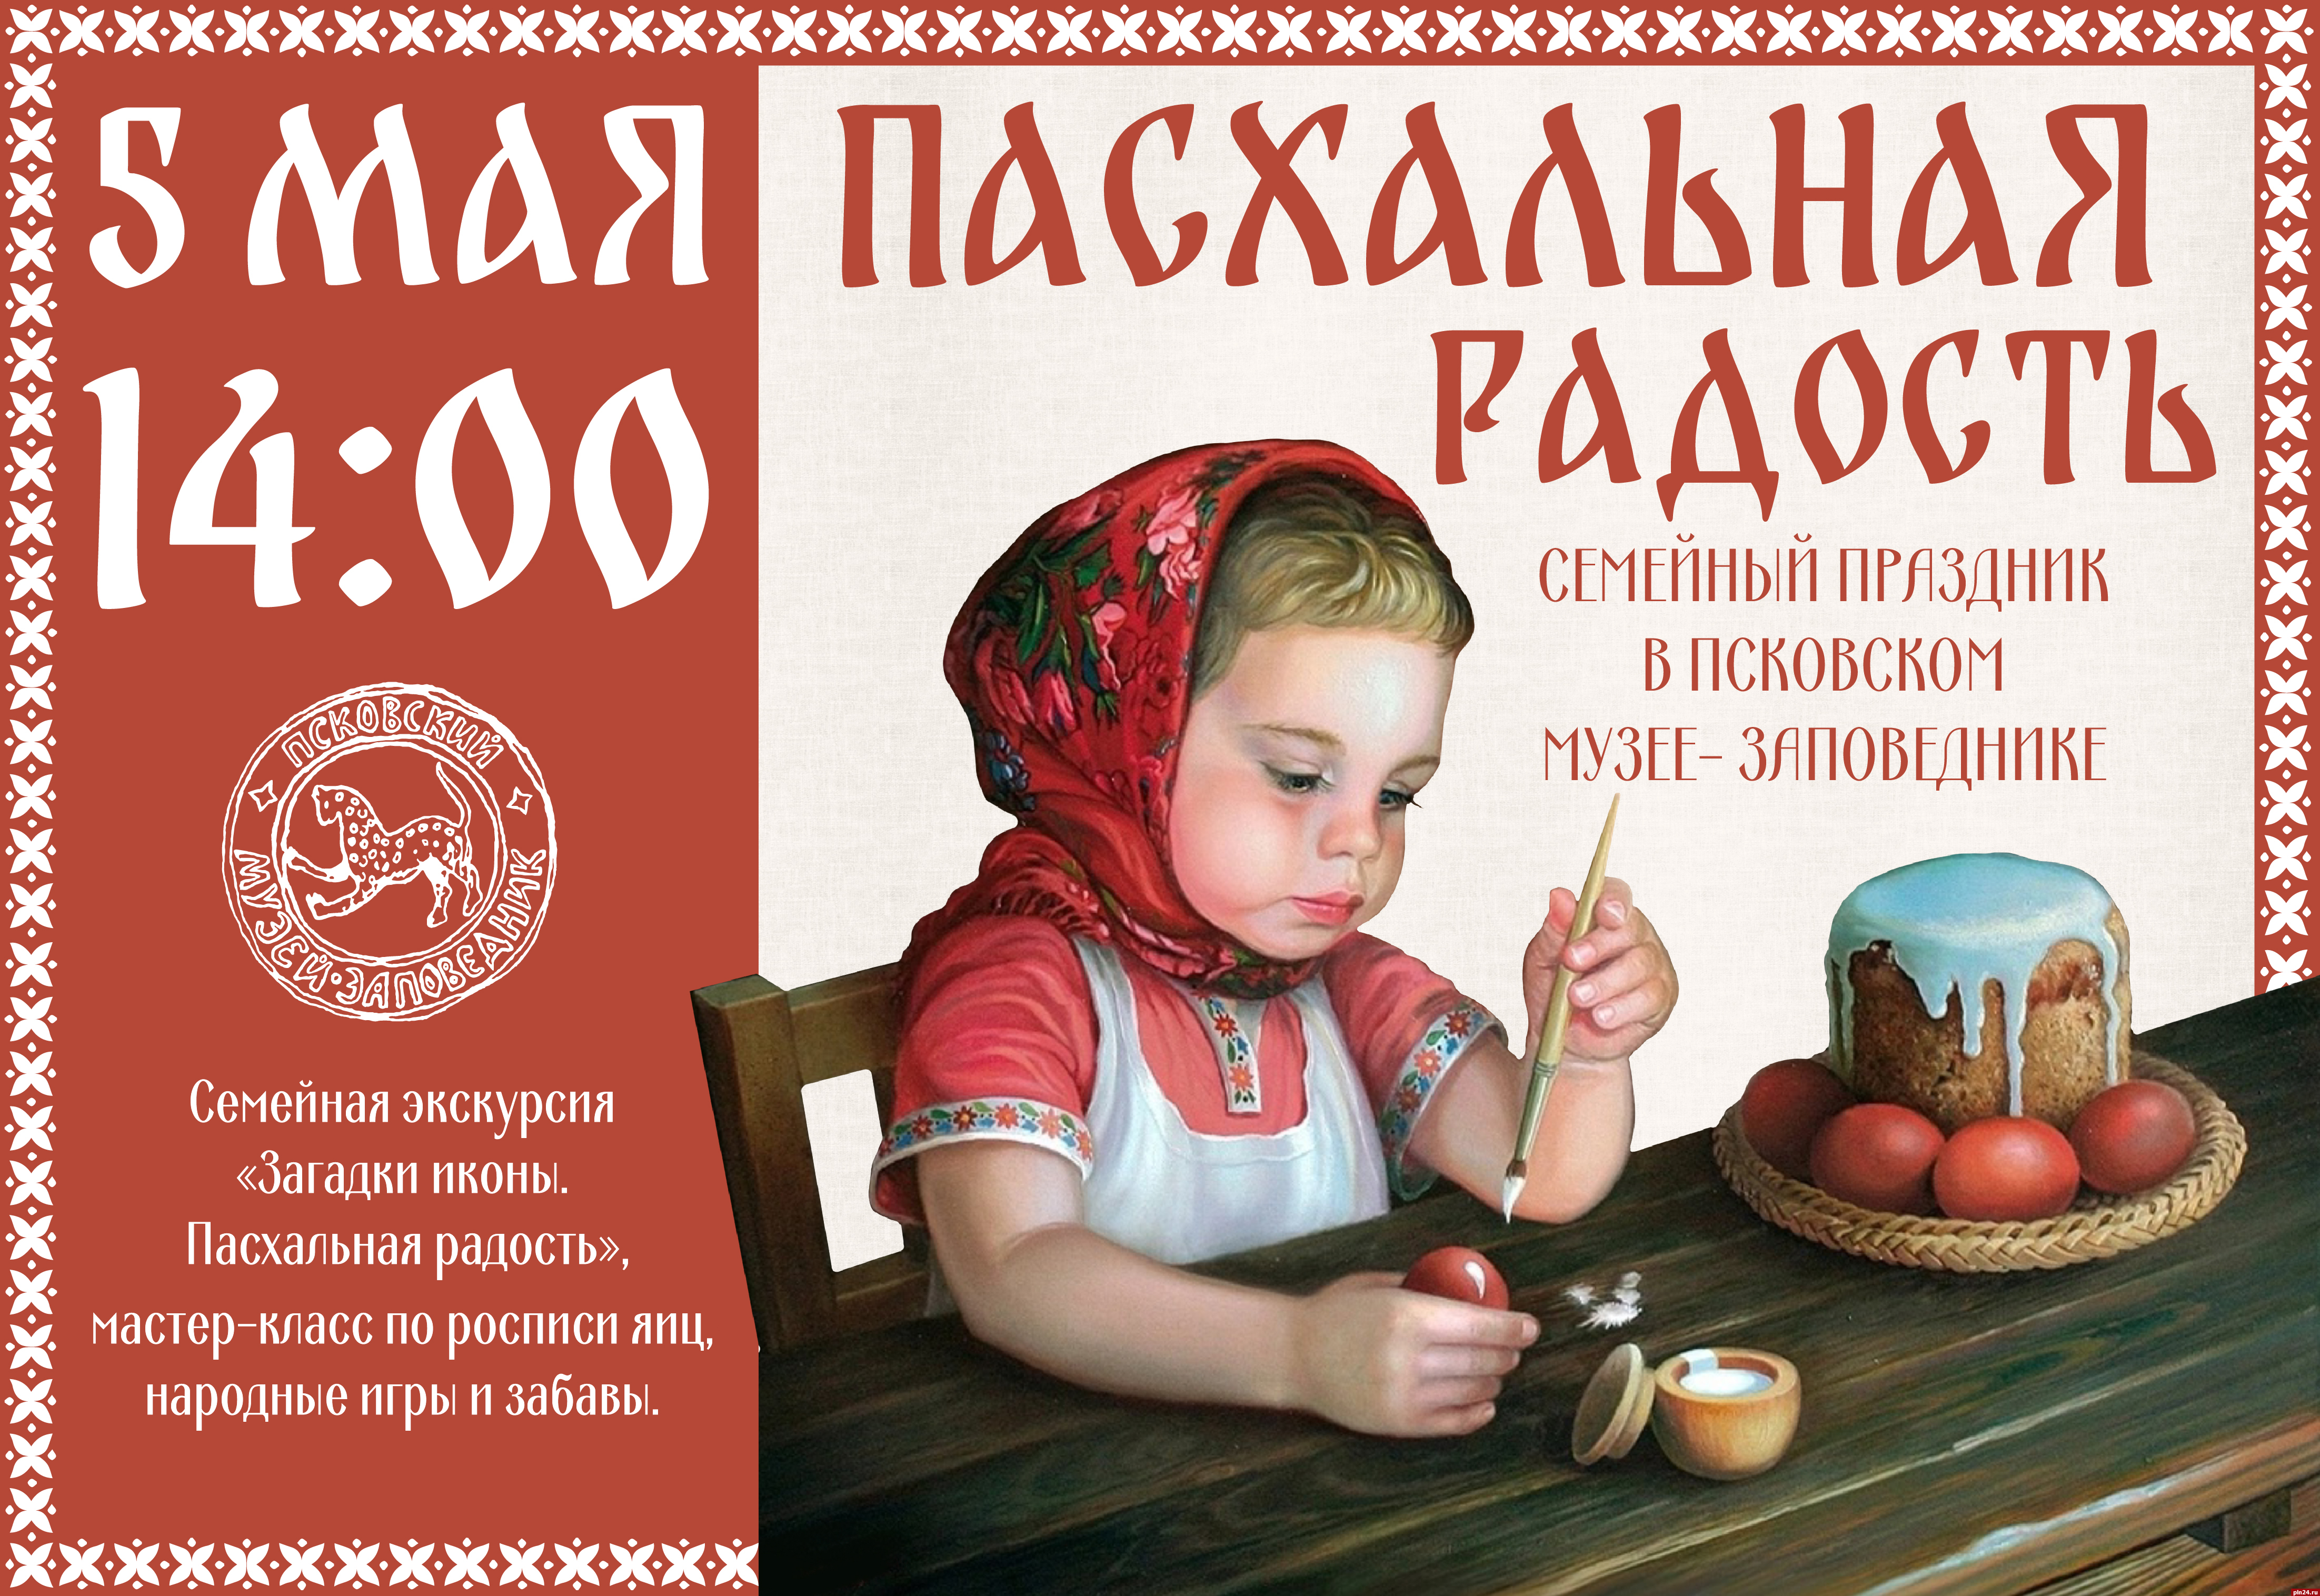 Семейная экскурсия, мастер-класс, игры и трапеза: пасхальную программу проведут в Псковском музее